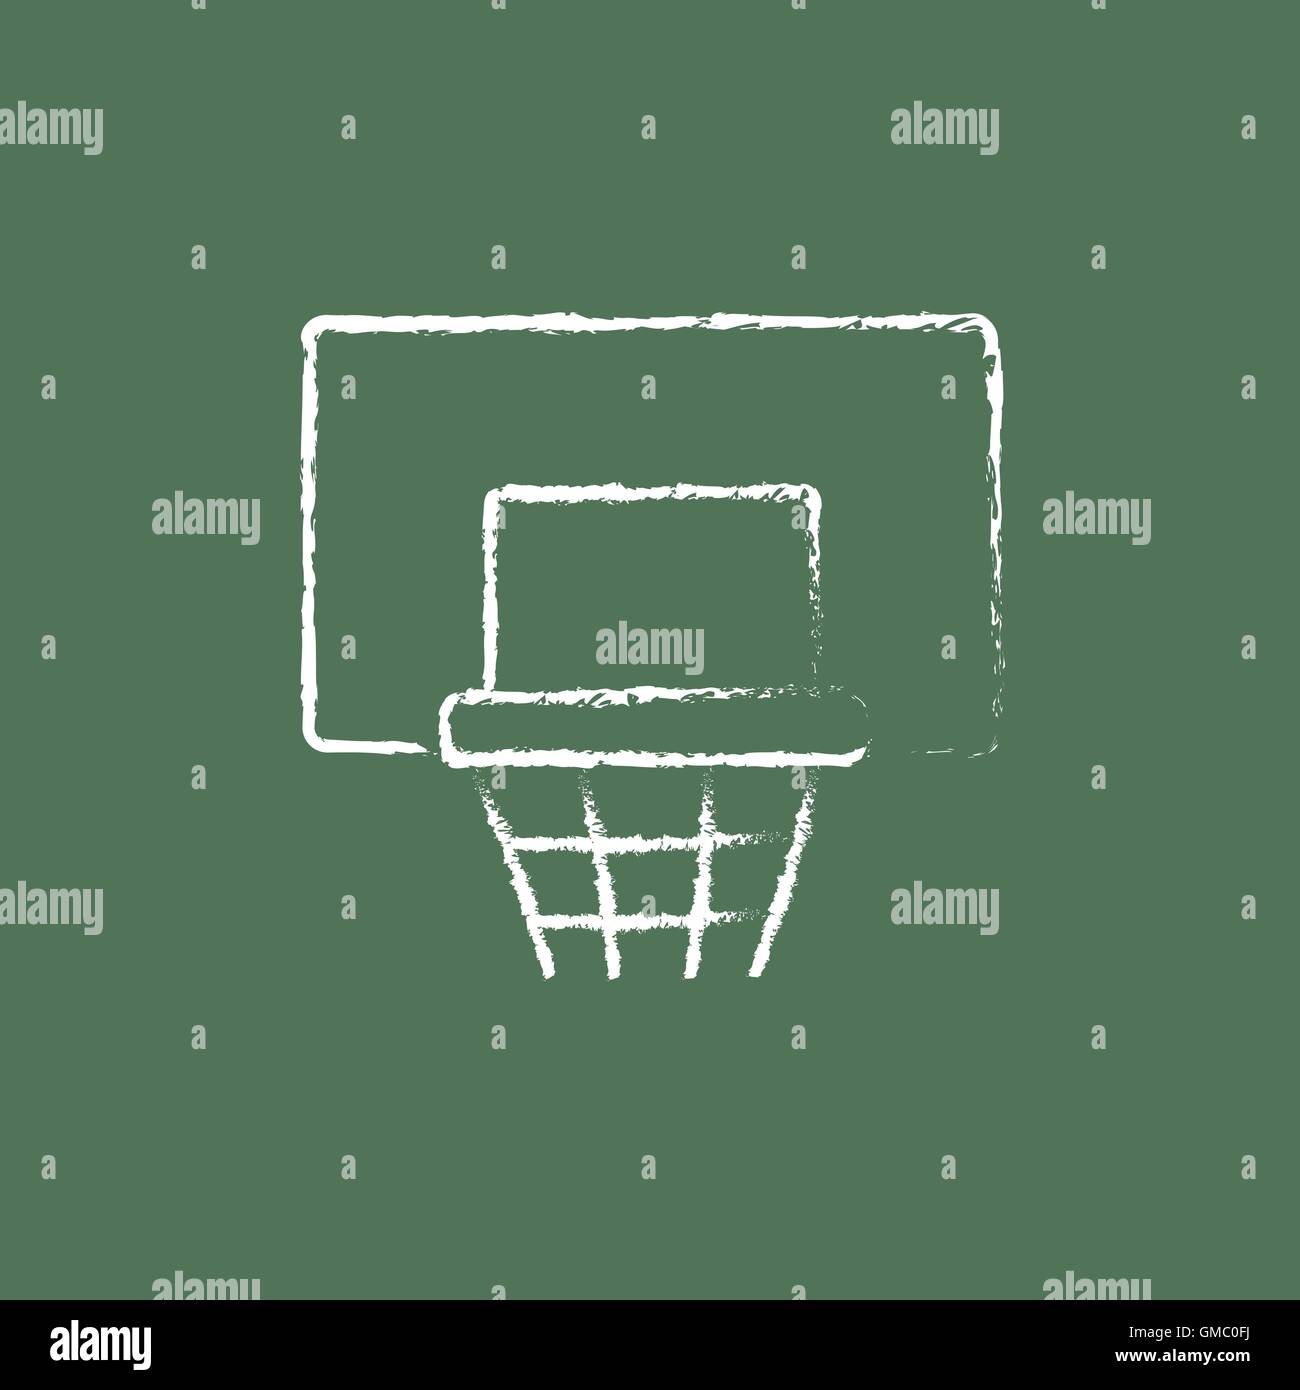 Basketball hoop icon disegnato in gesso. Illustrazione Vettoriale